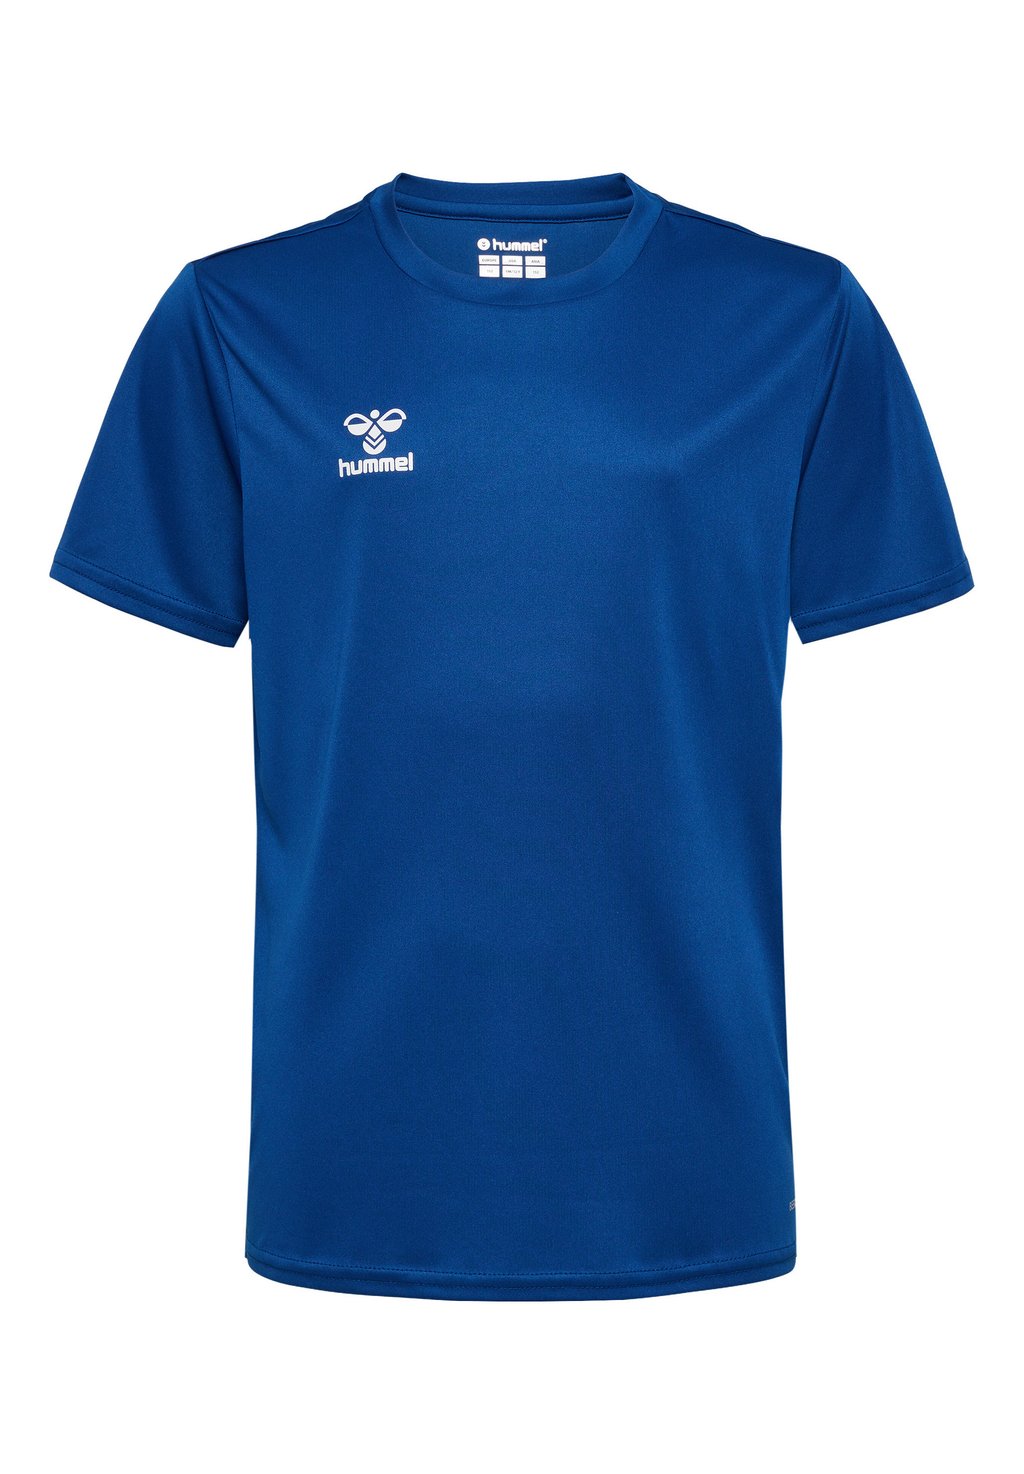 Футболка базовая ESSENTIAL SS Hummel, цвет true blue футболка базовая essential ss hummel цвет white